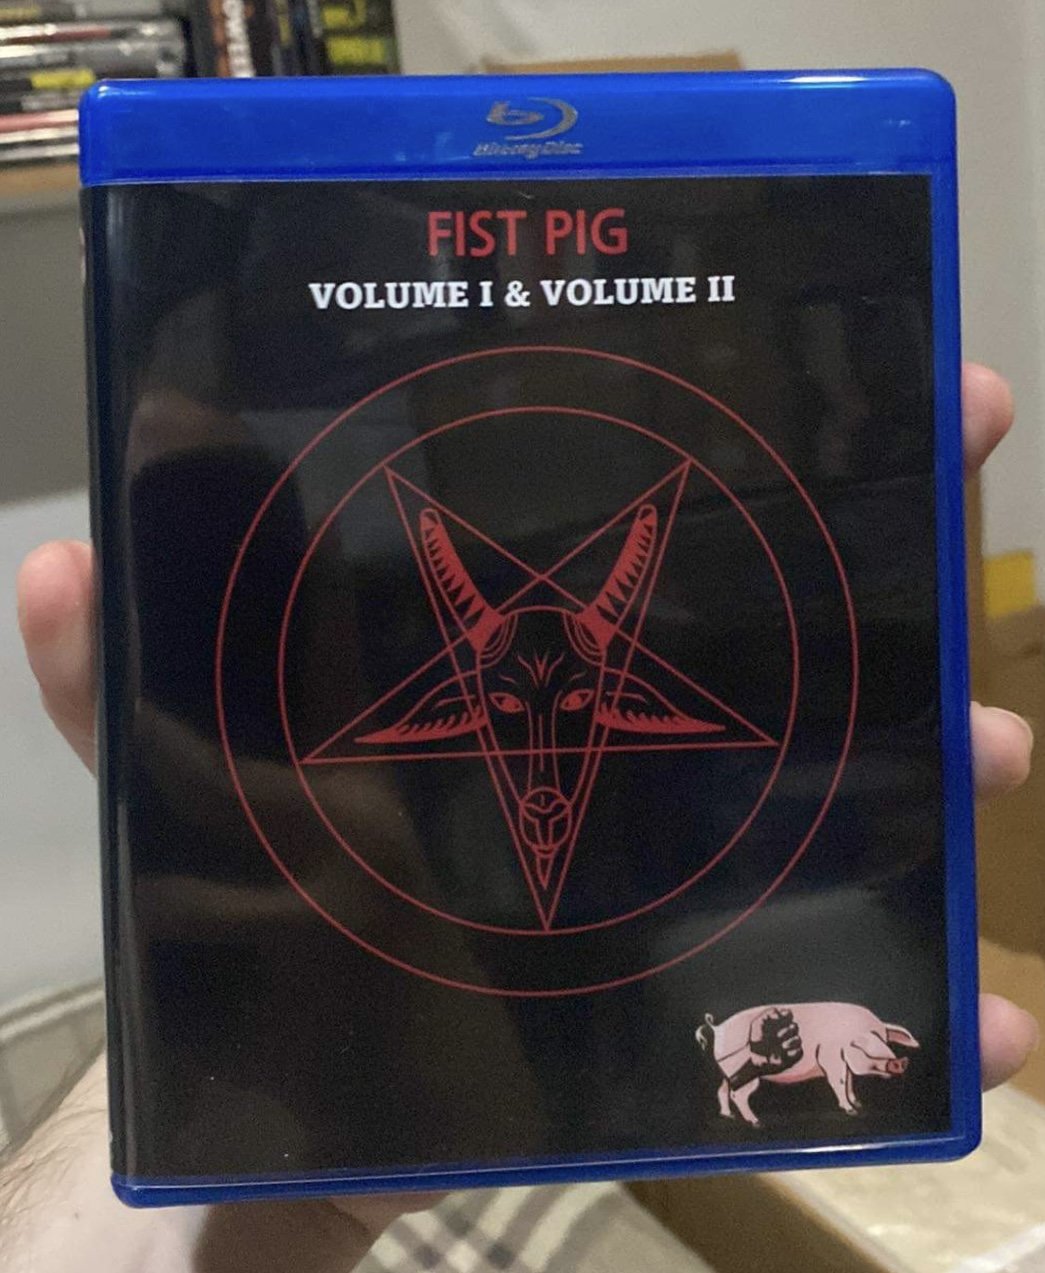 BLU-RAY: Fist Pig Mixtape: Volume 1 & 2 - Gore, Weird - Region Free